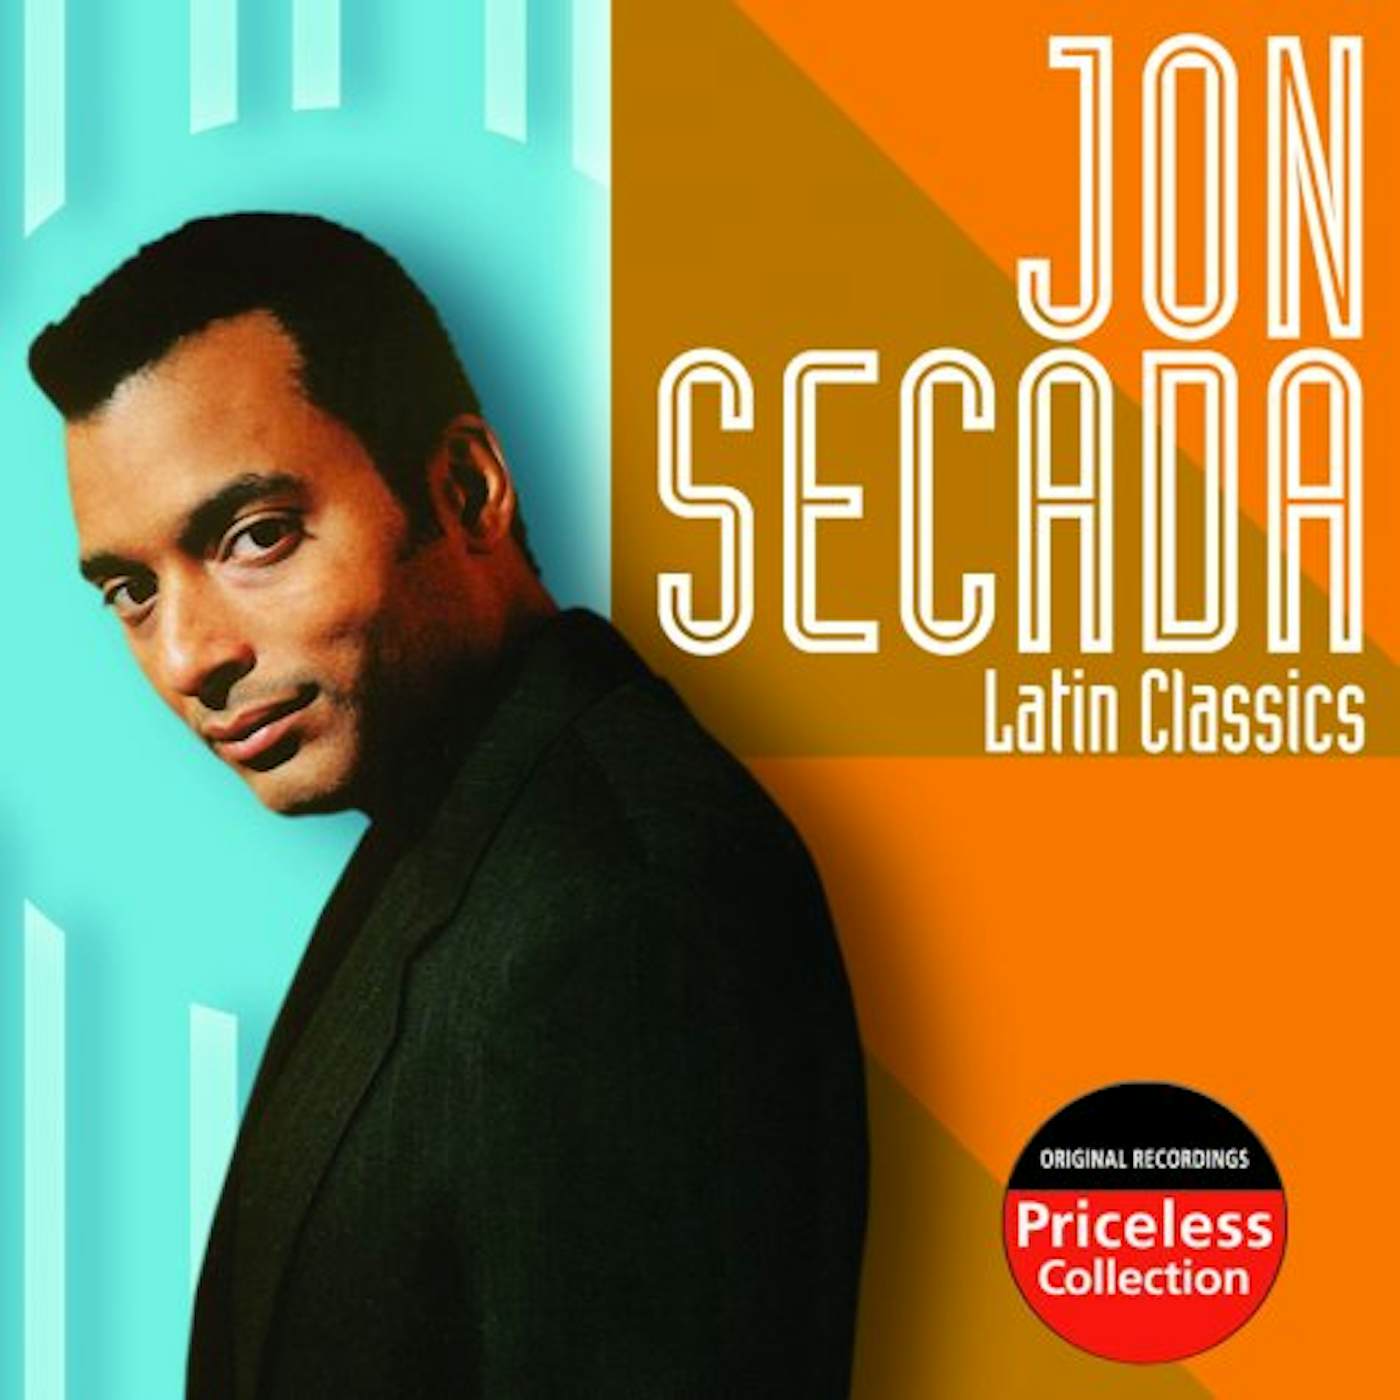 Jon Secada LATIN CLASSICS CD